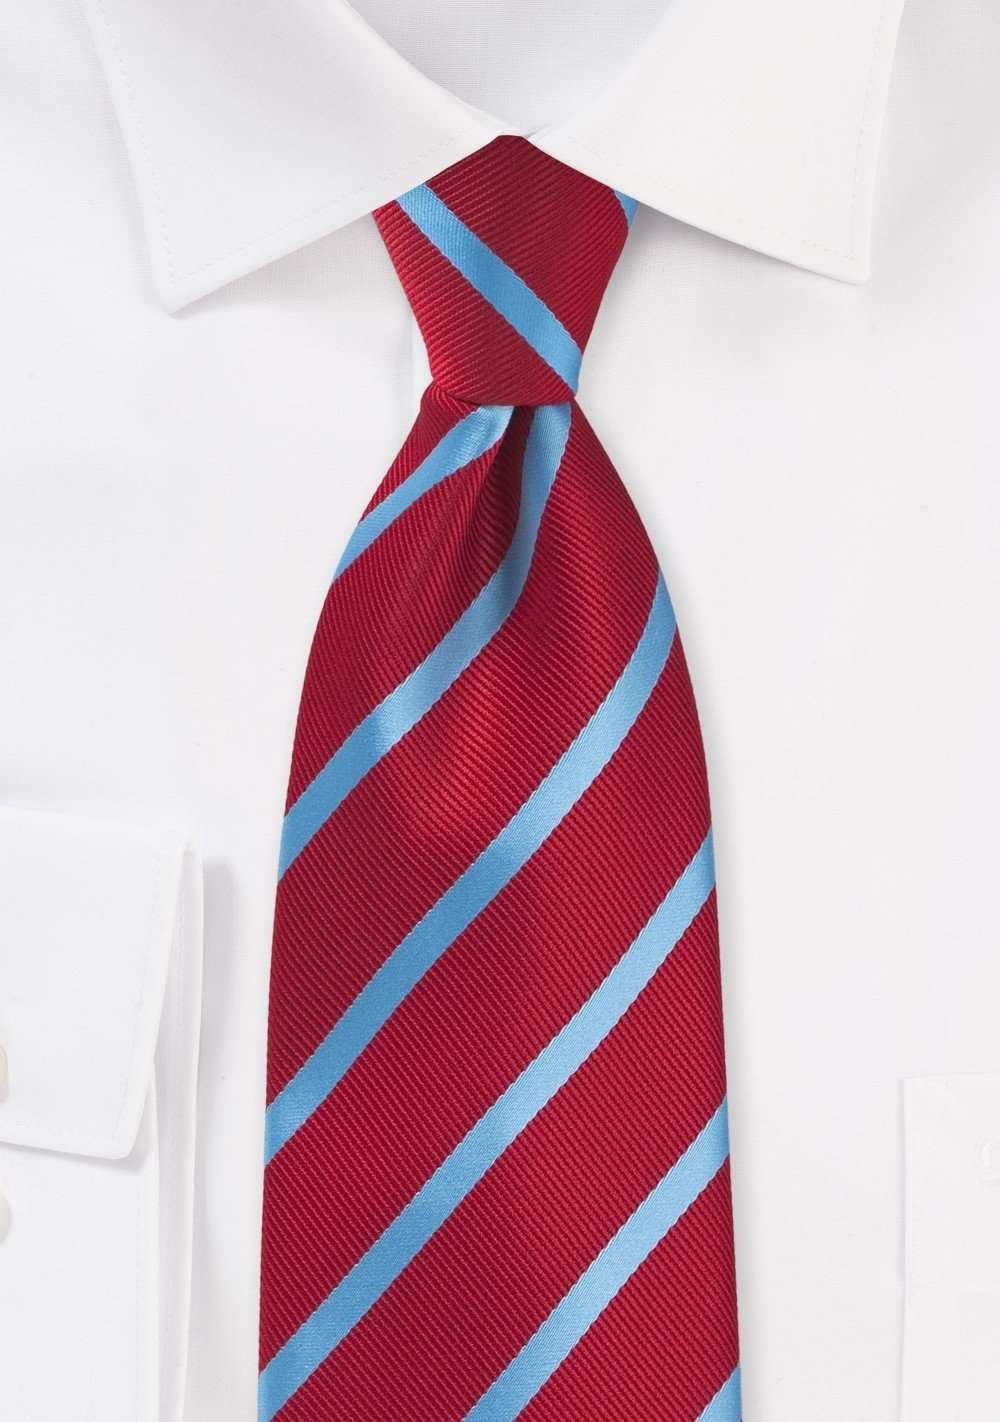 Tomato Red and Cornflower Blue Repp&Regimental Striped Necktie - Men Suits